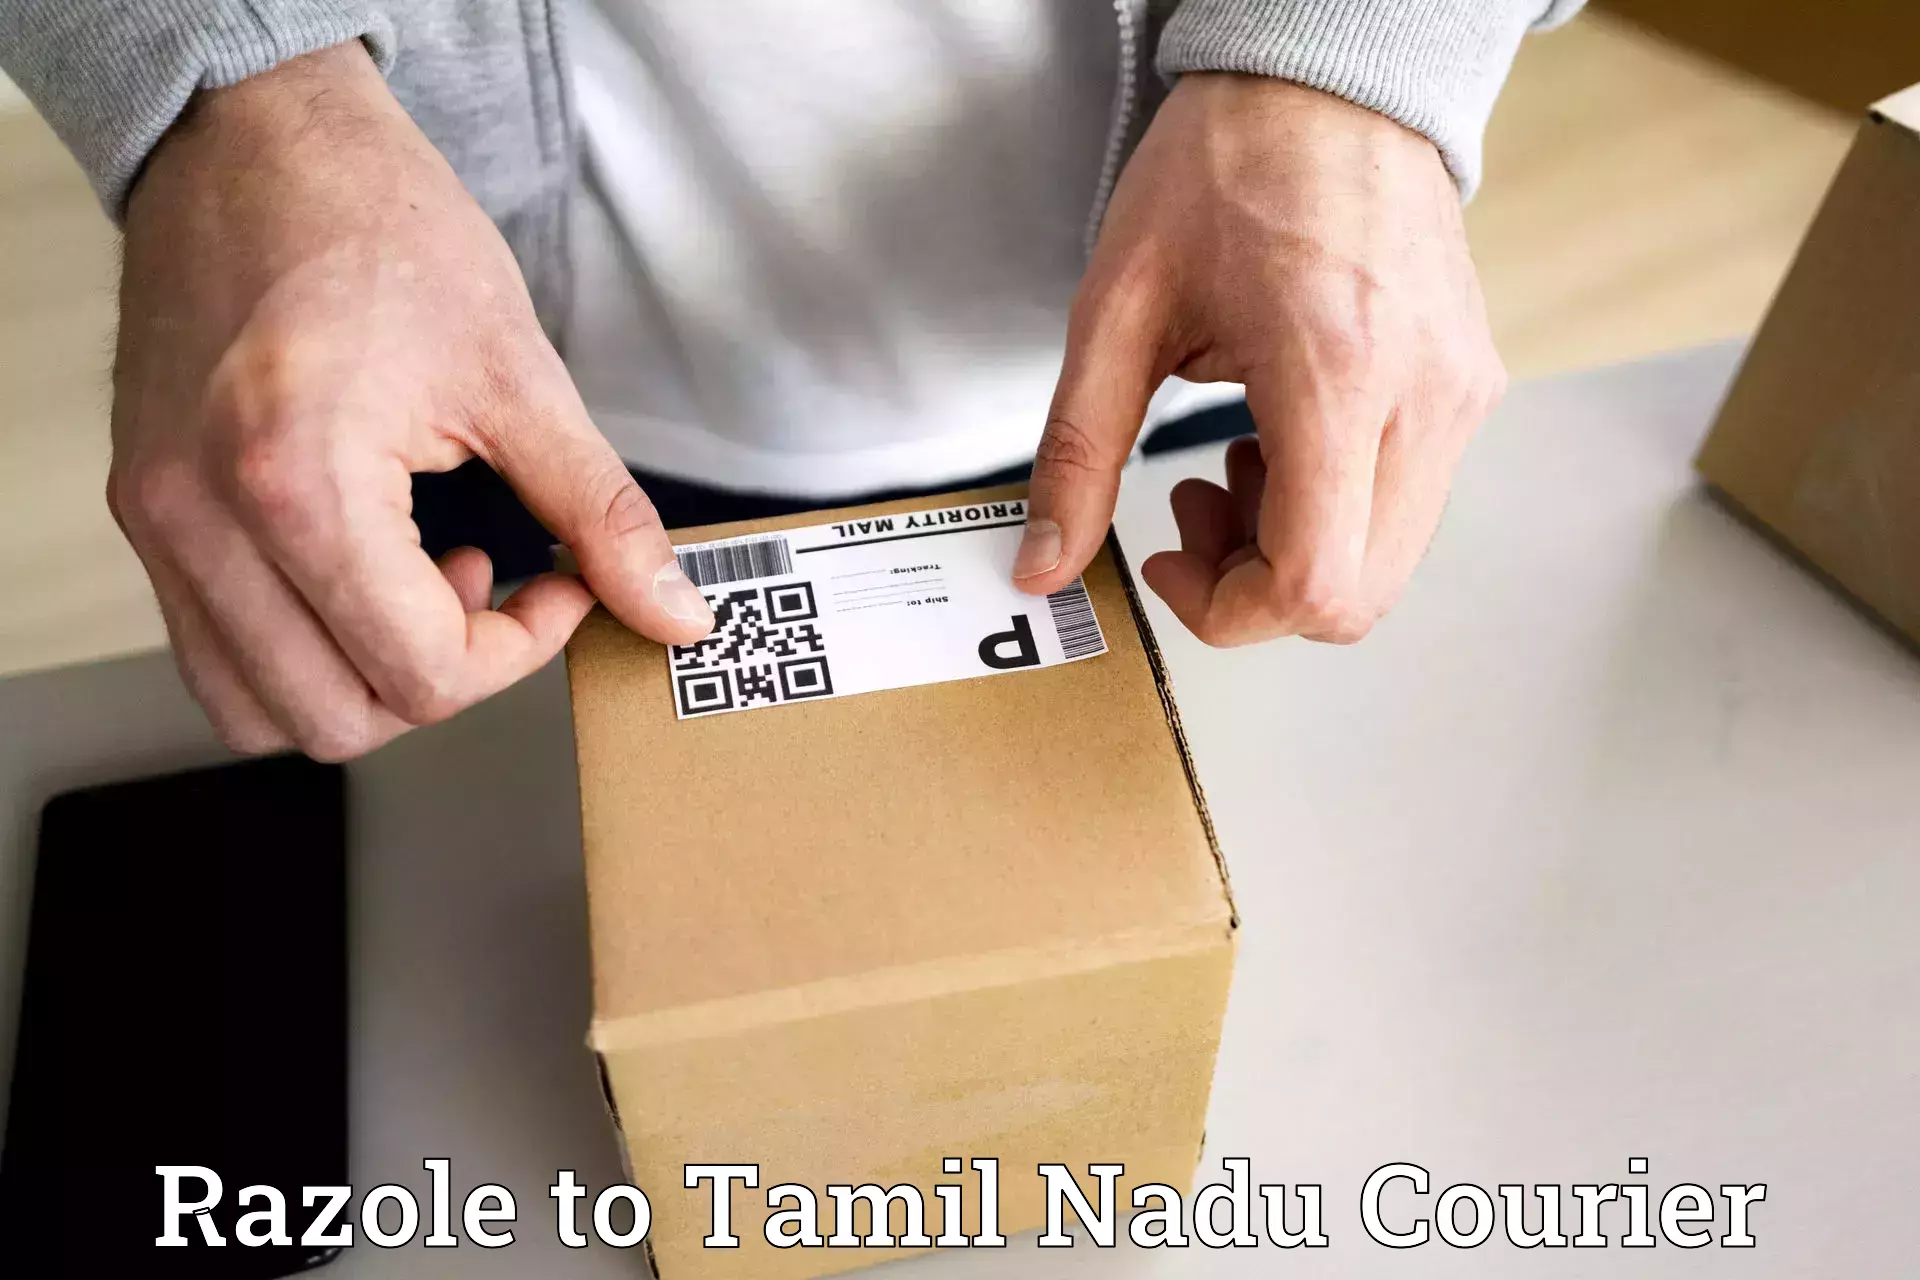 User-friendly delivery service Razole to Chennai Port